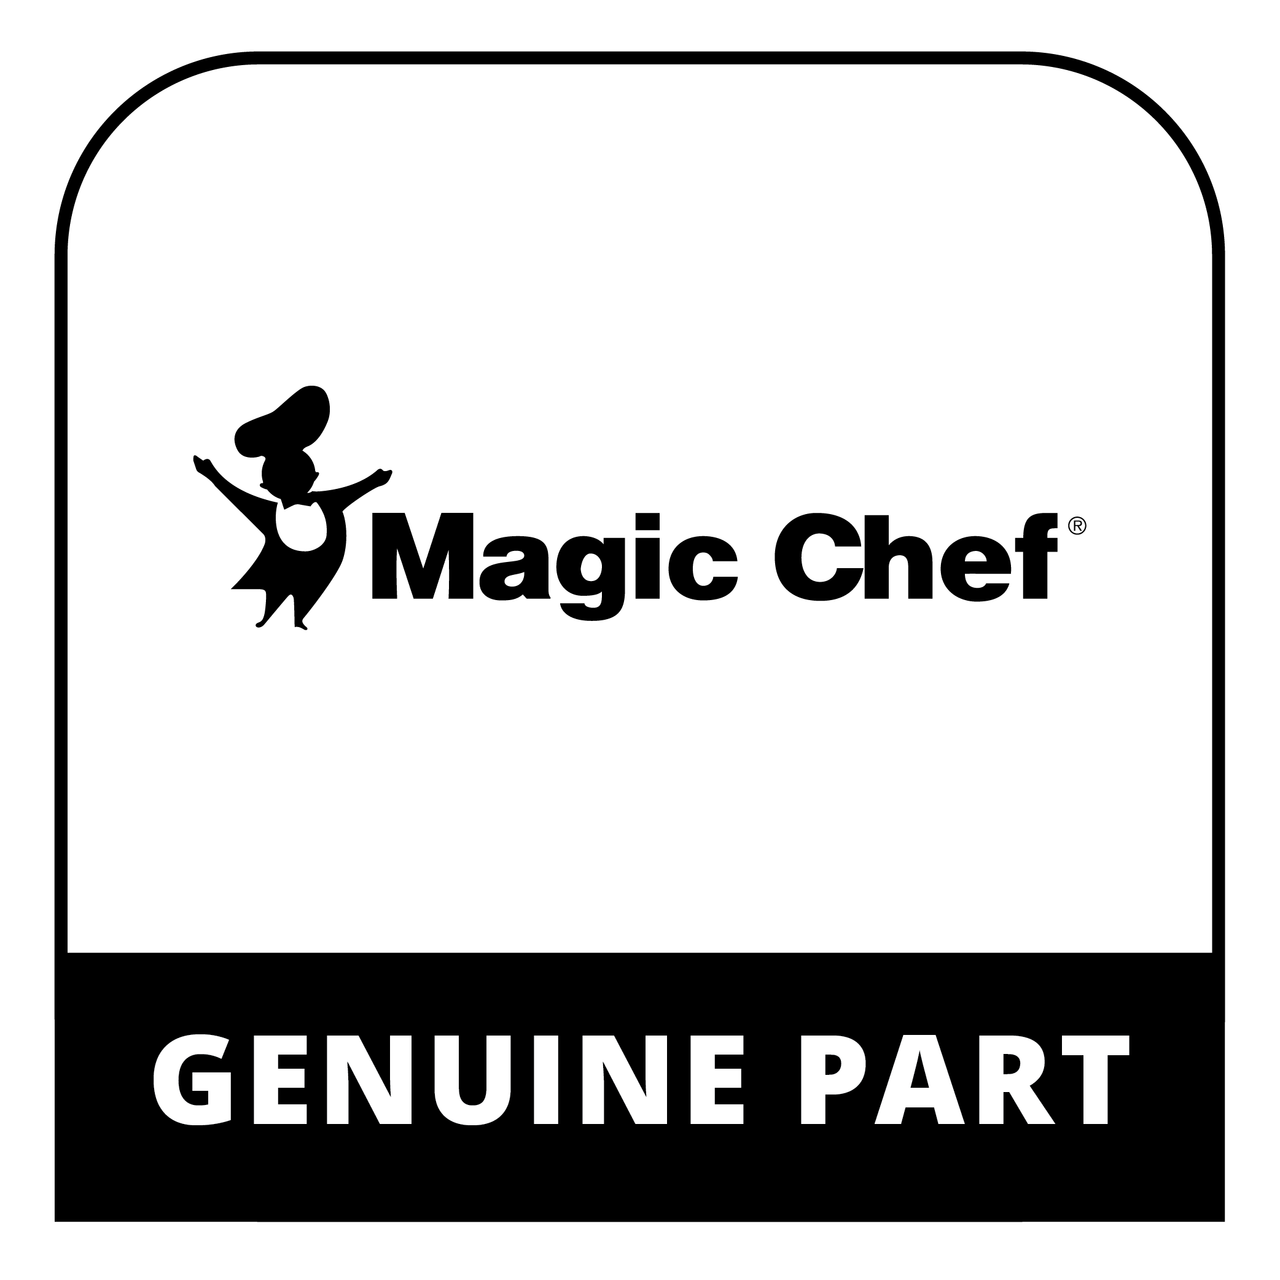 Magic Chef 253069005895 - SWITCH MEMBRANE - Genuine Magic Chef Part